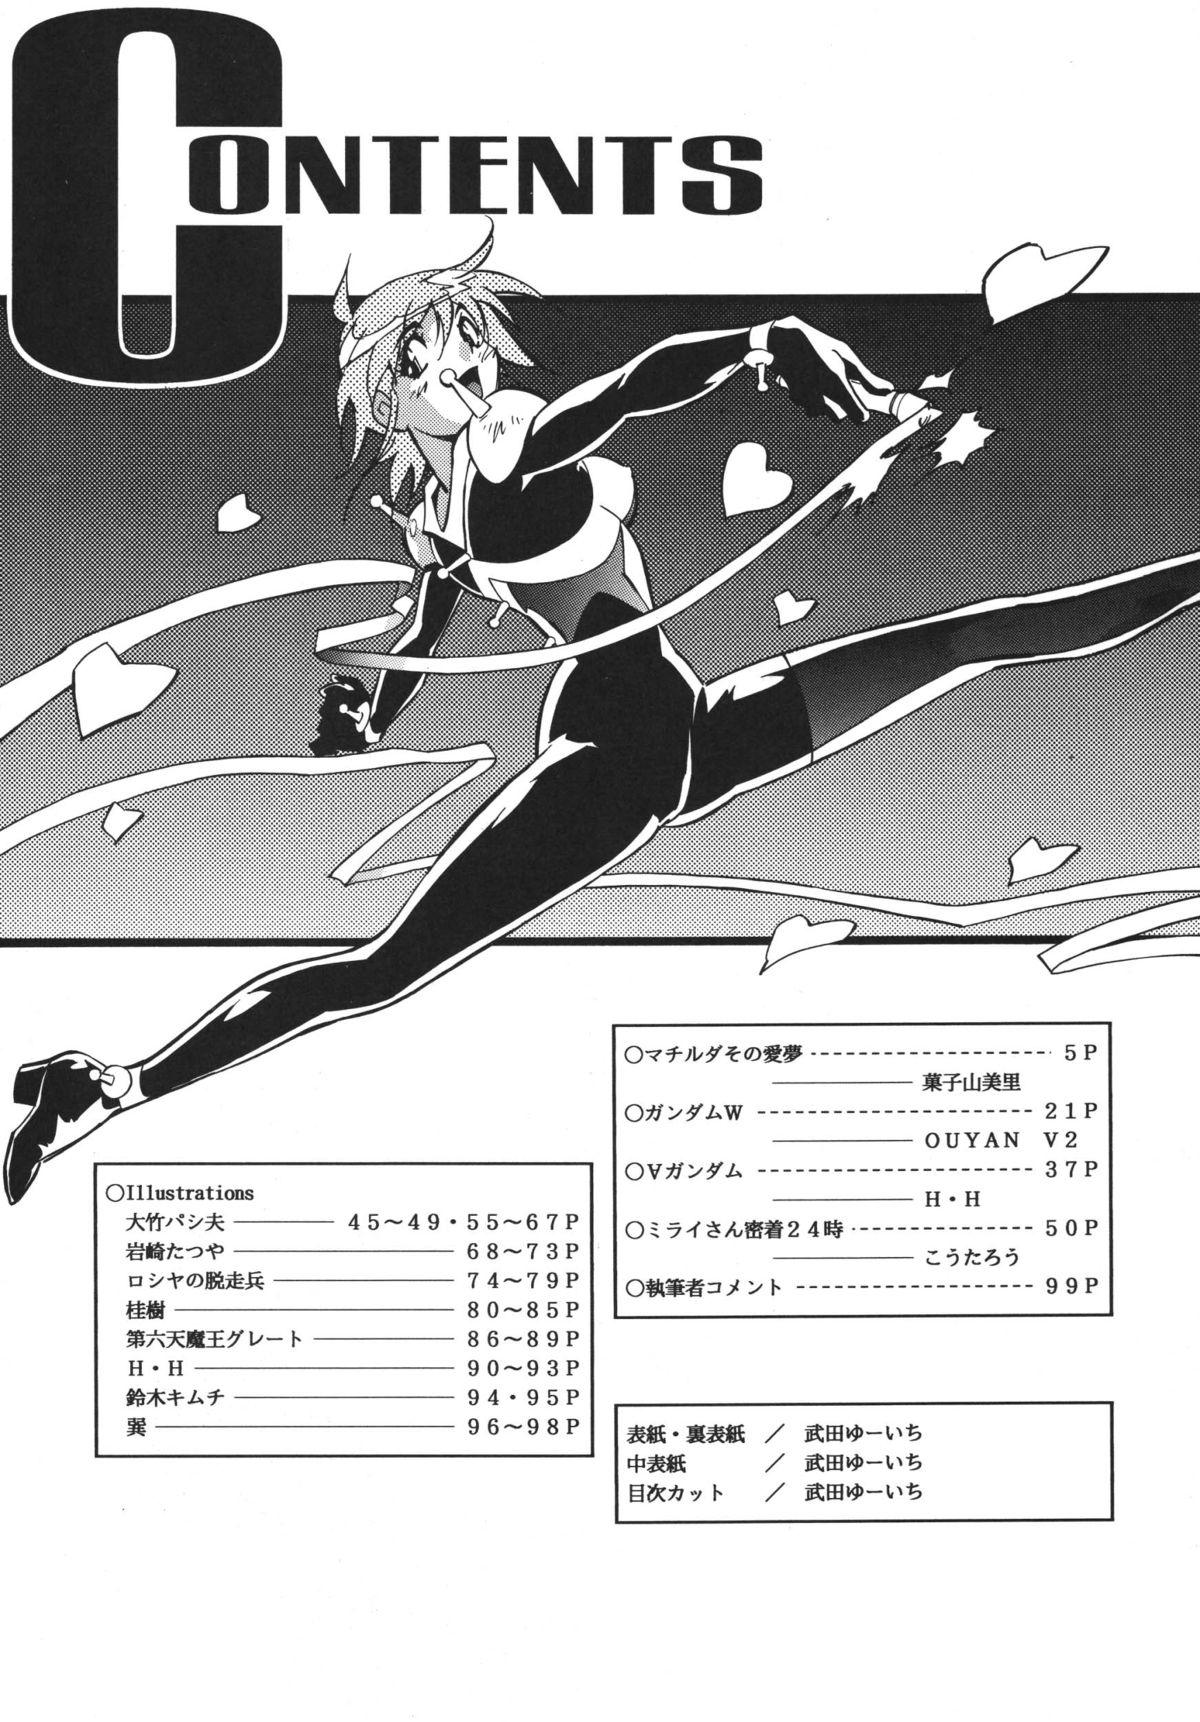 Morrita マチルタその愛夢 - Gundam Mature - Page 2